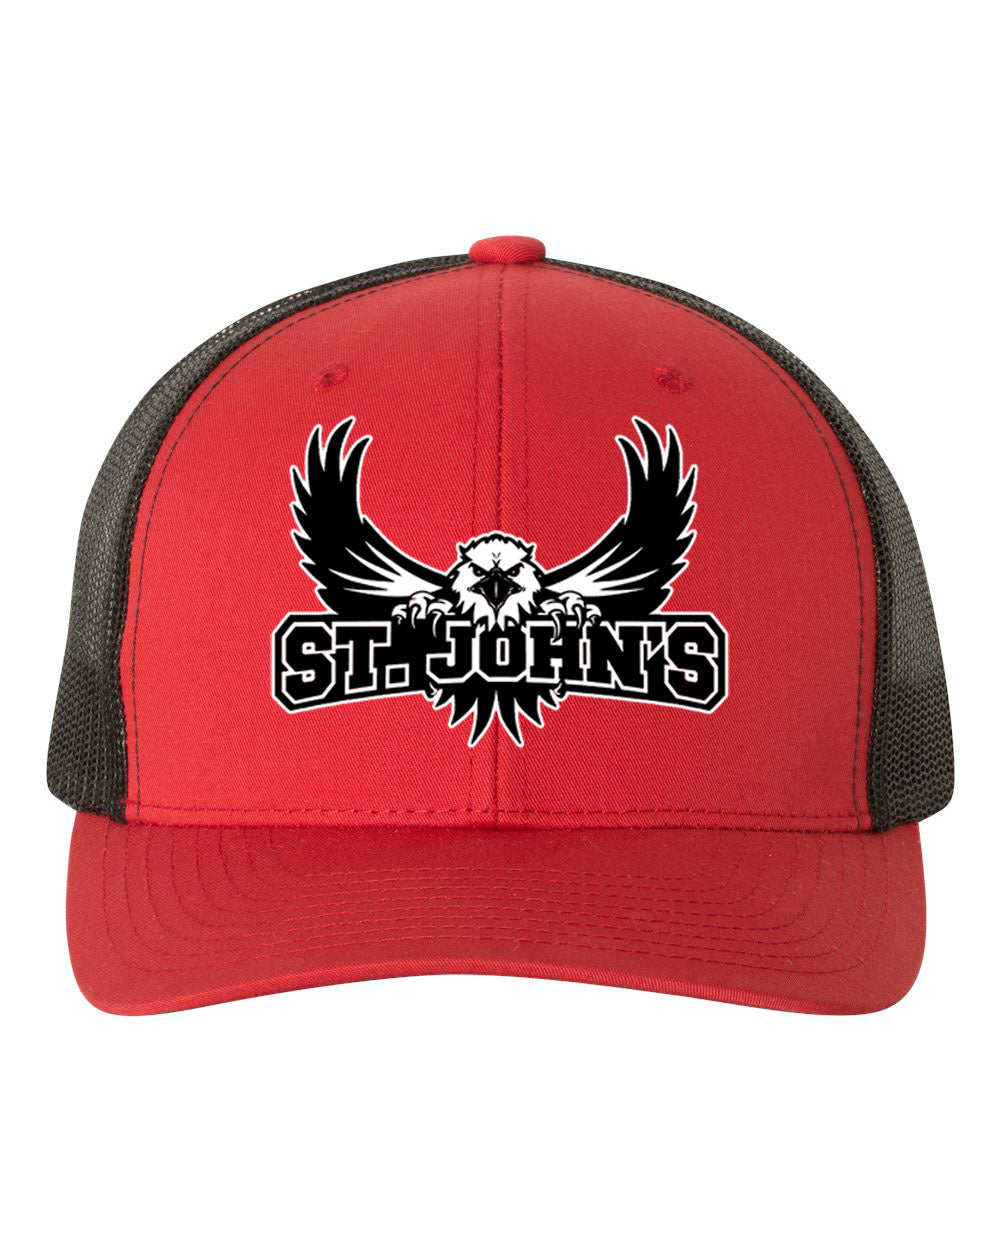 St. John's design 3 Trucker Hat